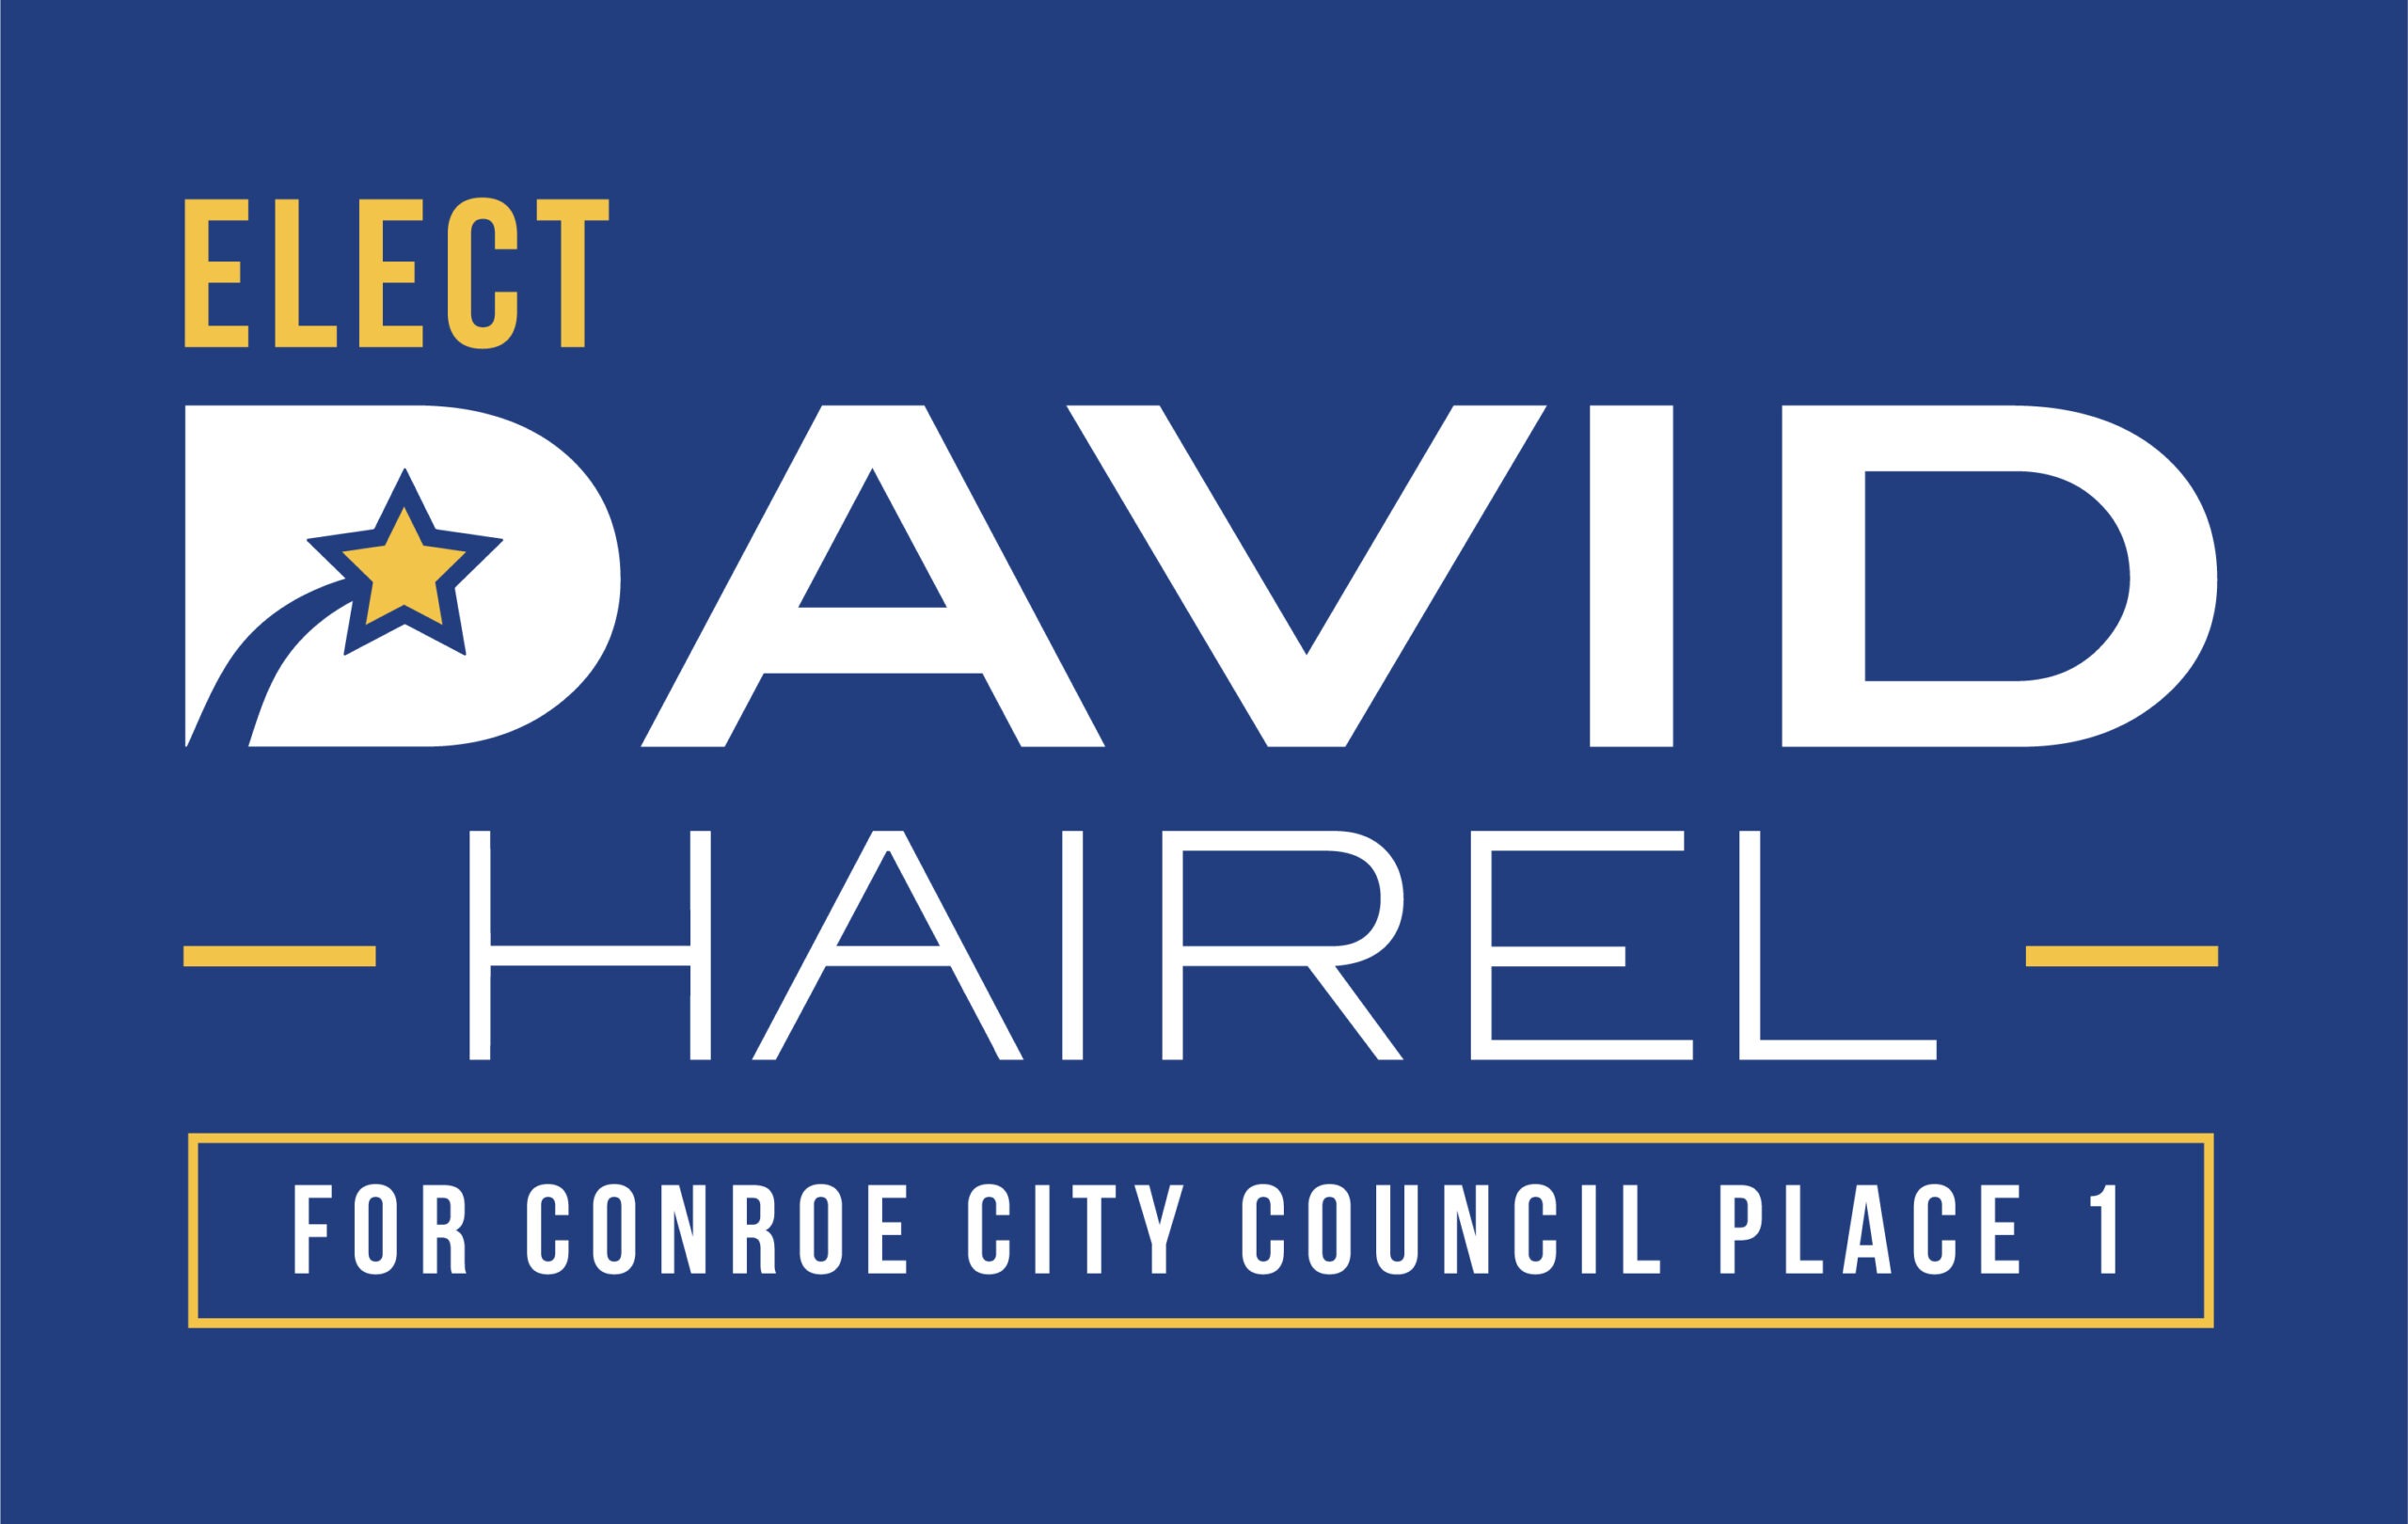 DAVID HAIREL FOR CONROE CITY COUNCIL